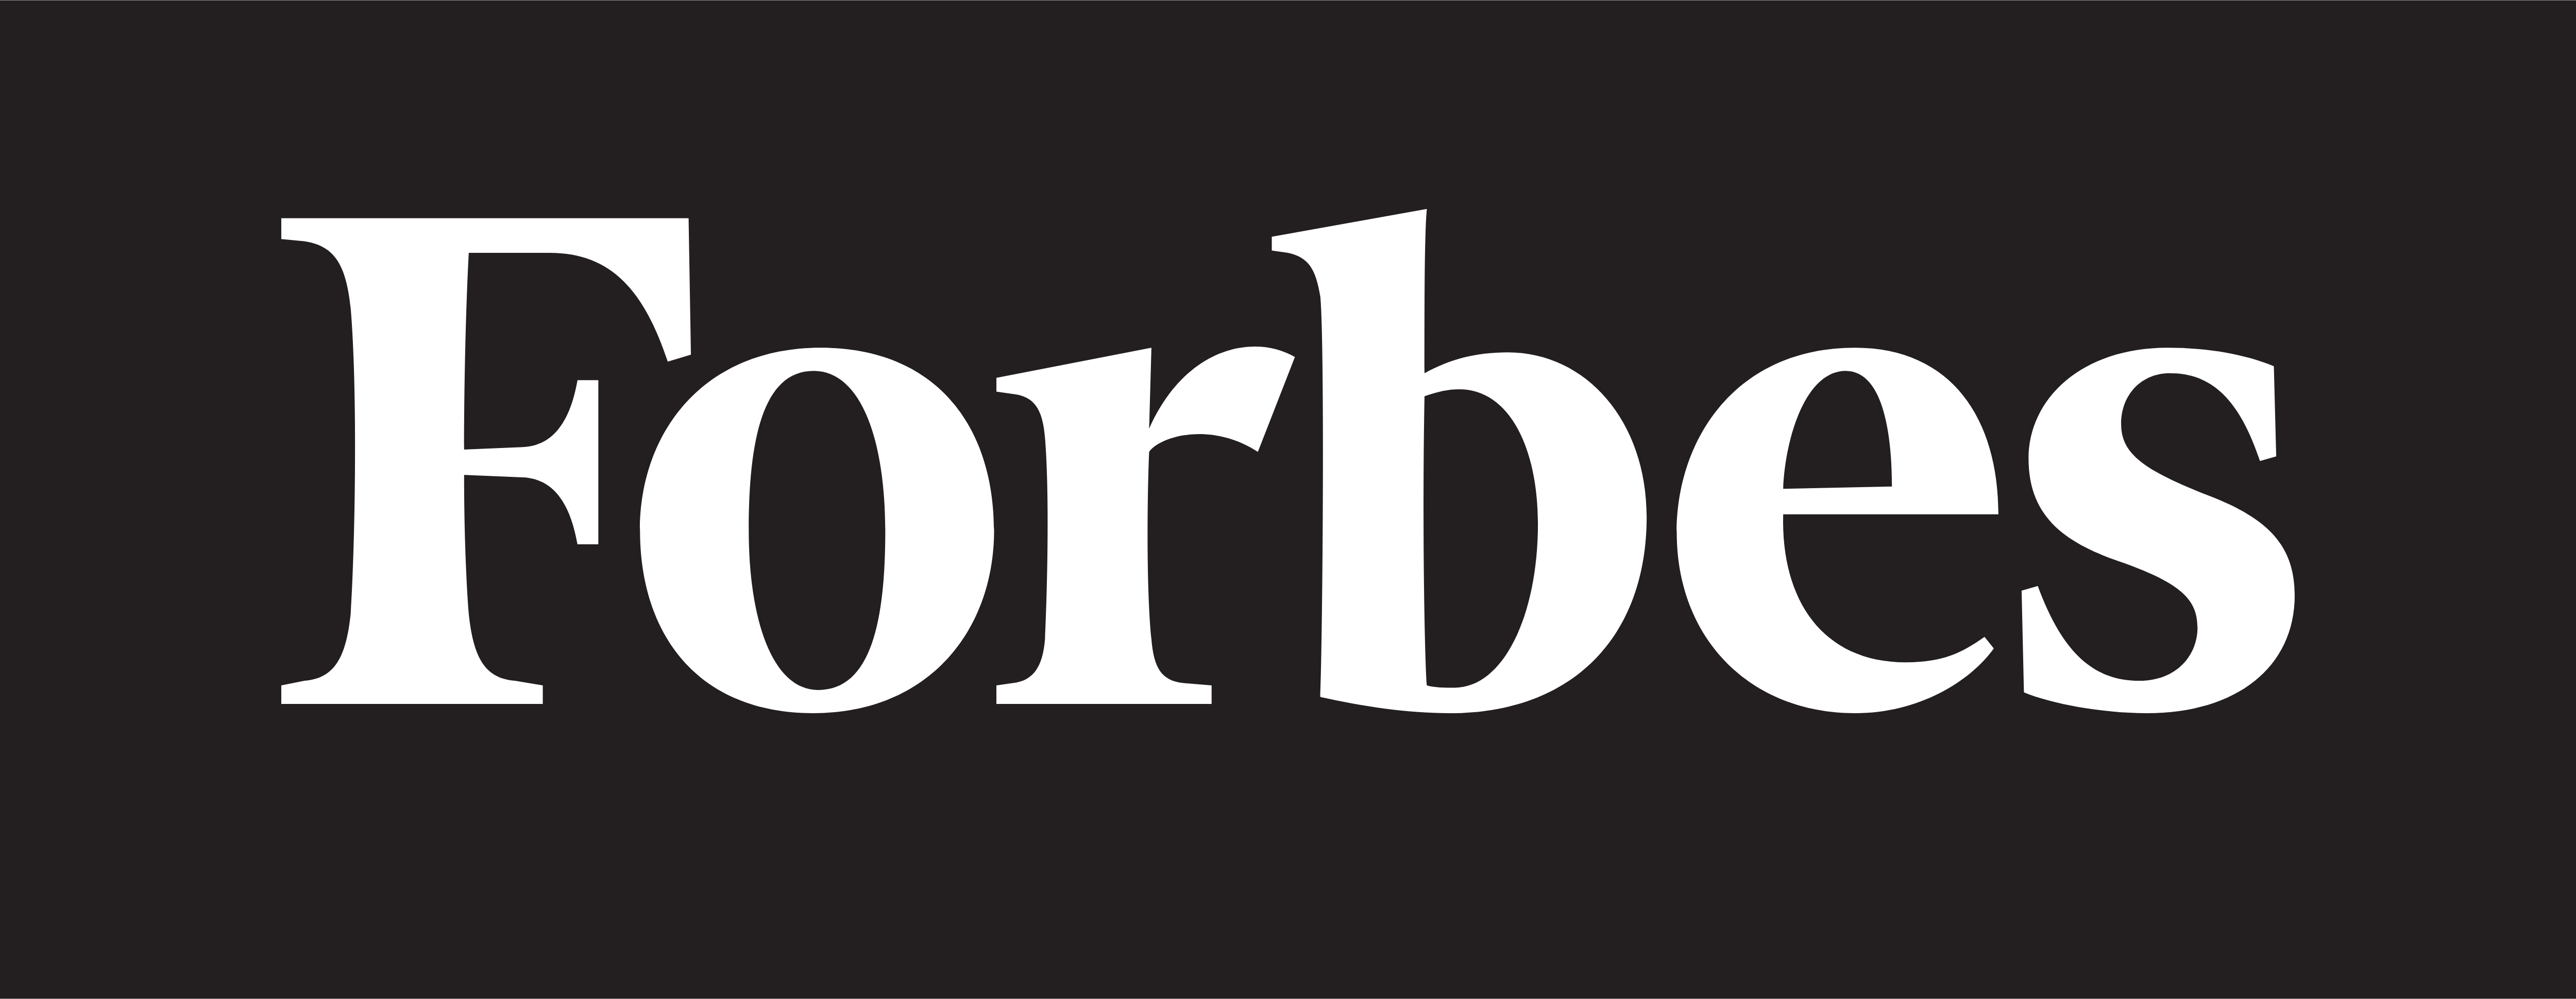 Forbes – Logoları İndir